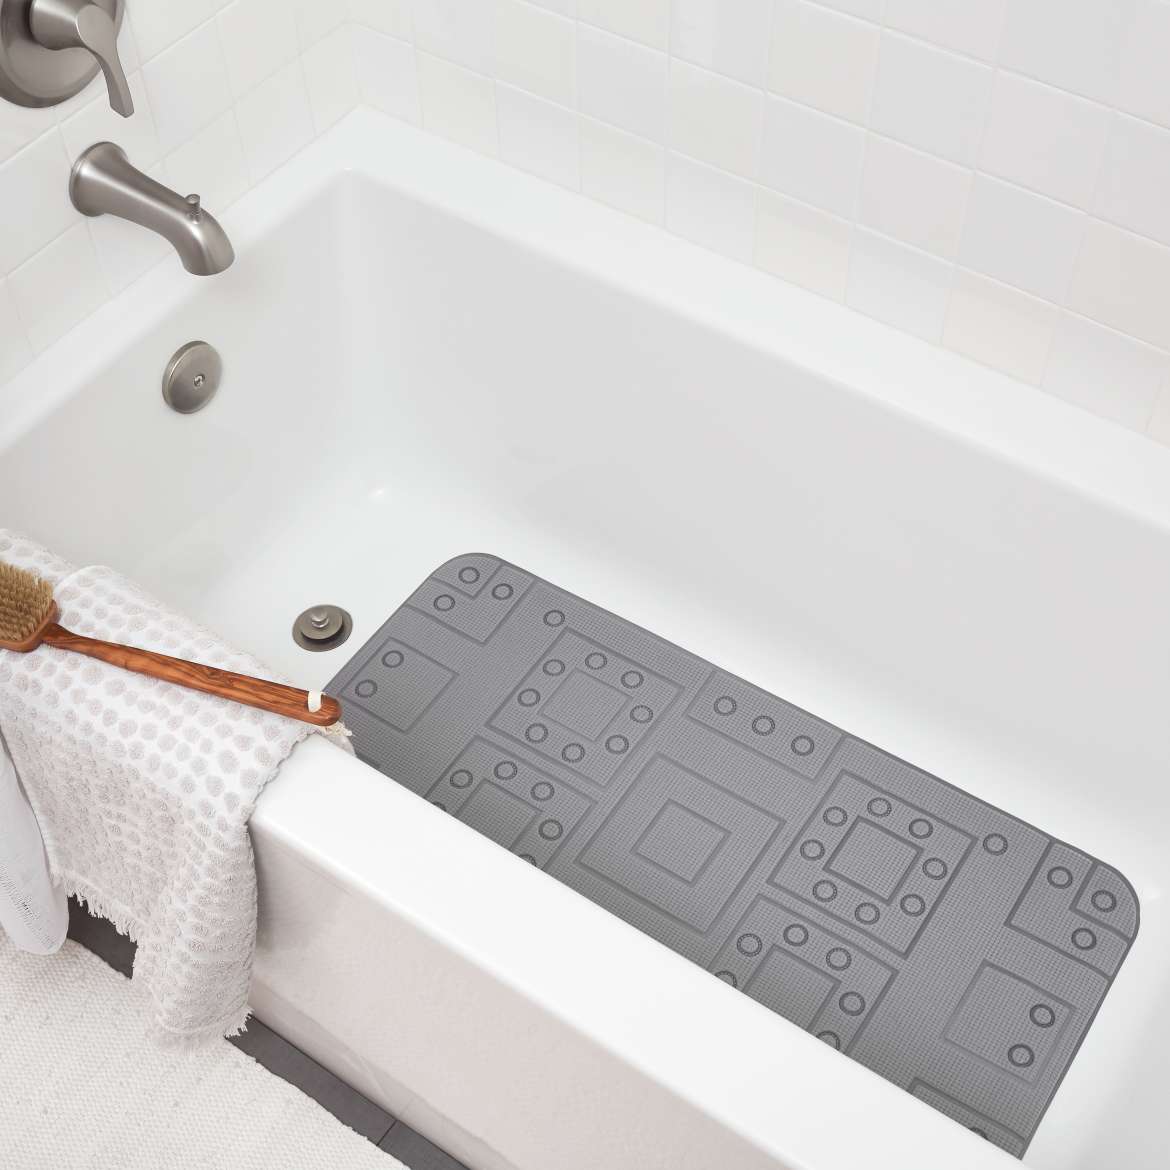 Duck® Brand Safety Grip Tub Mat